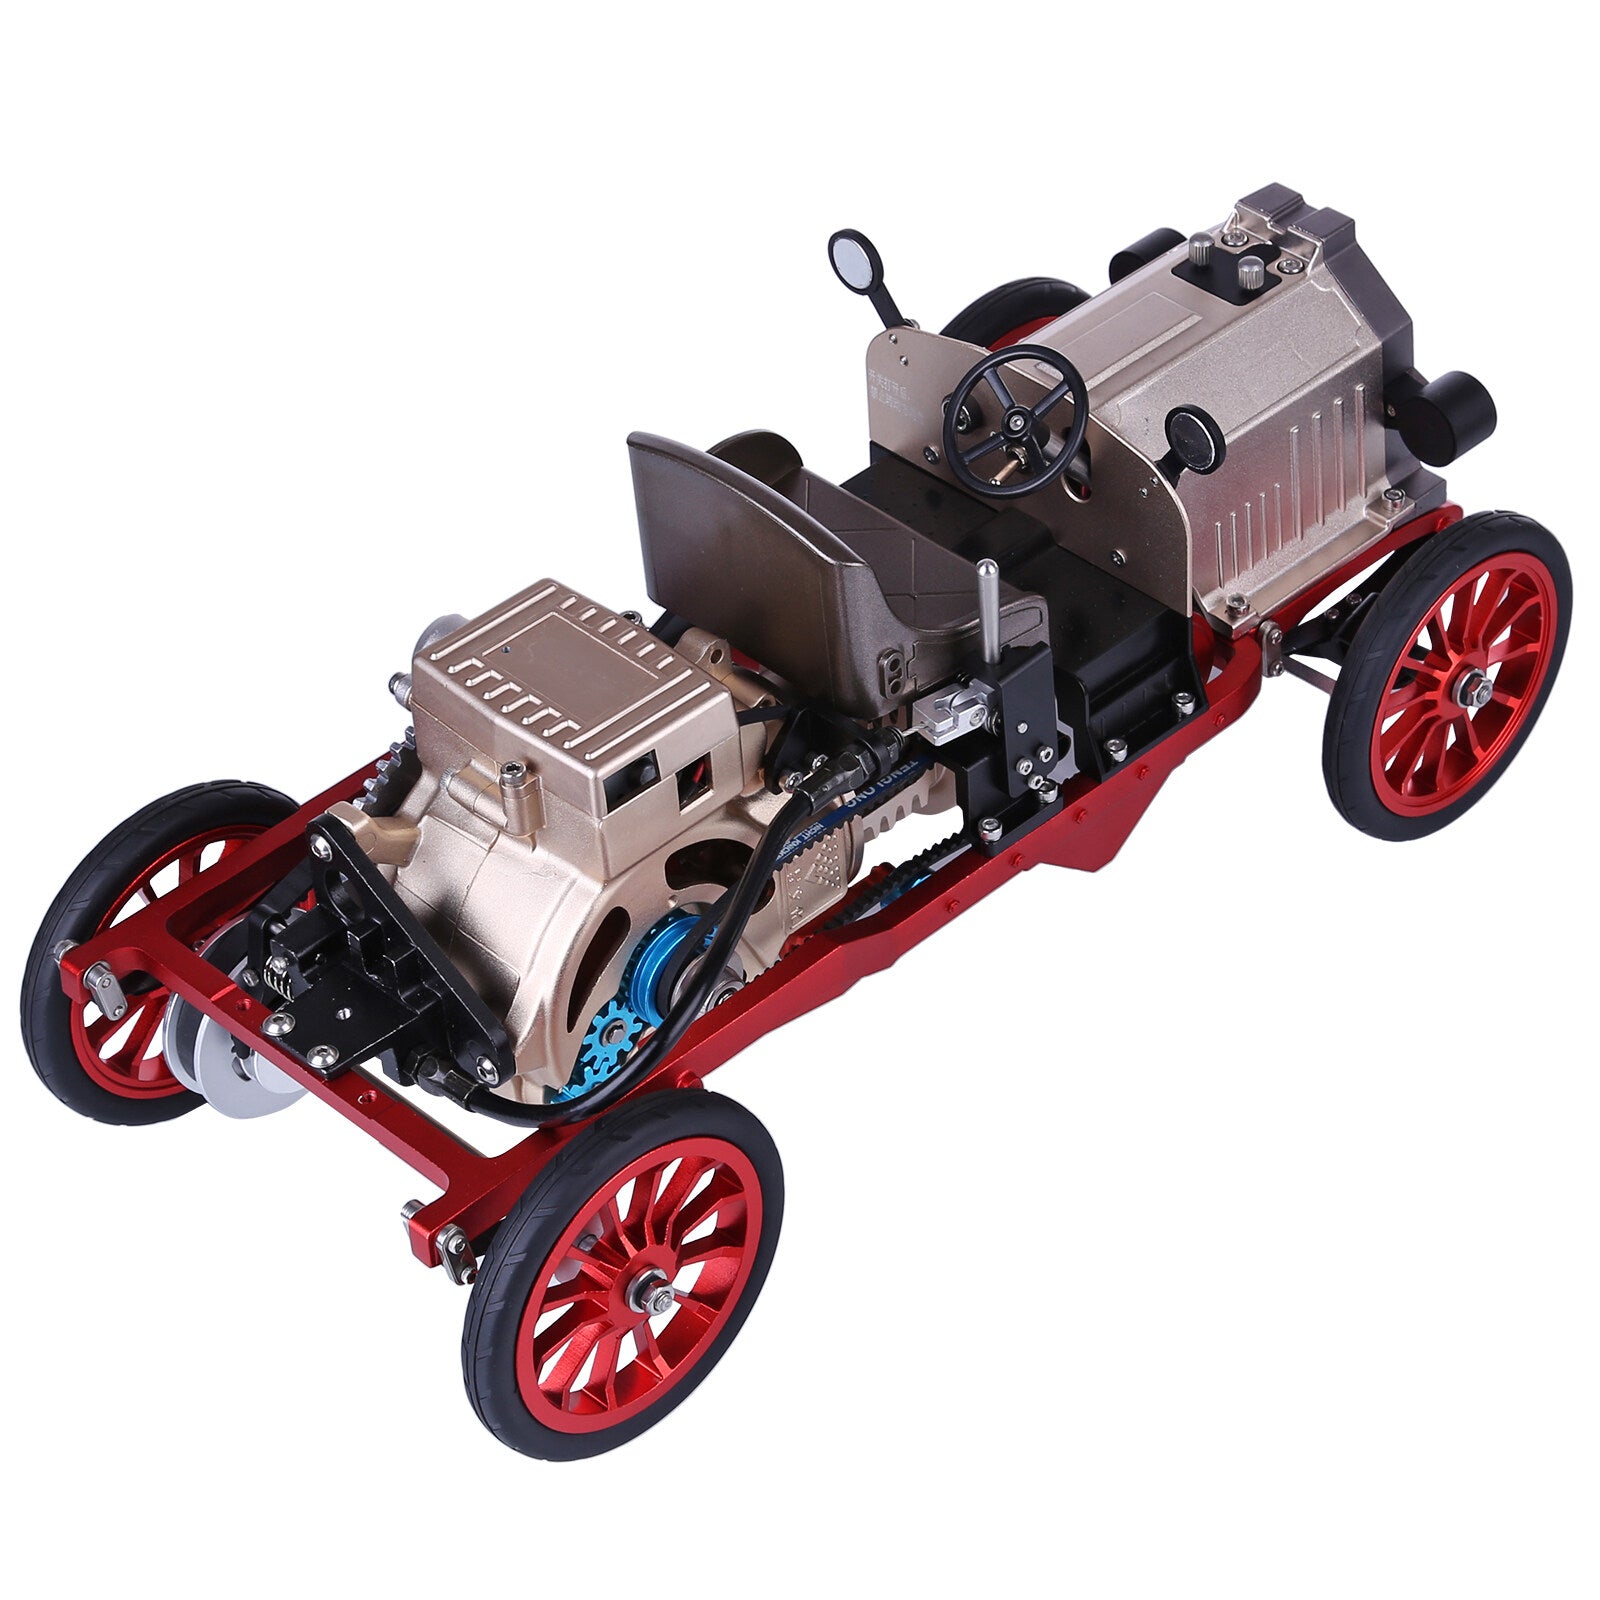 TECHING Klassisches Auto mit Einzylinder-Motormodellbausatz, das funktioniert - 300 Teile 5